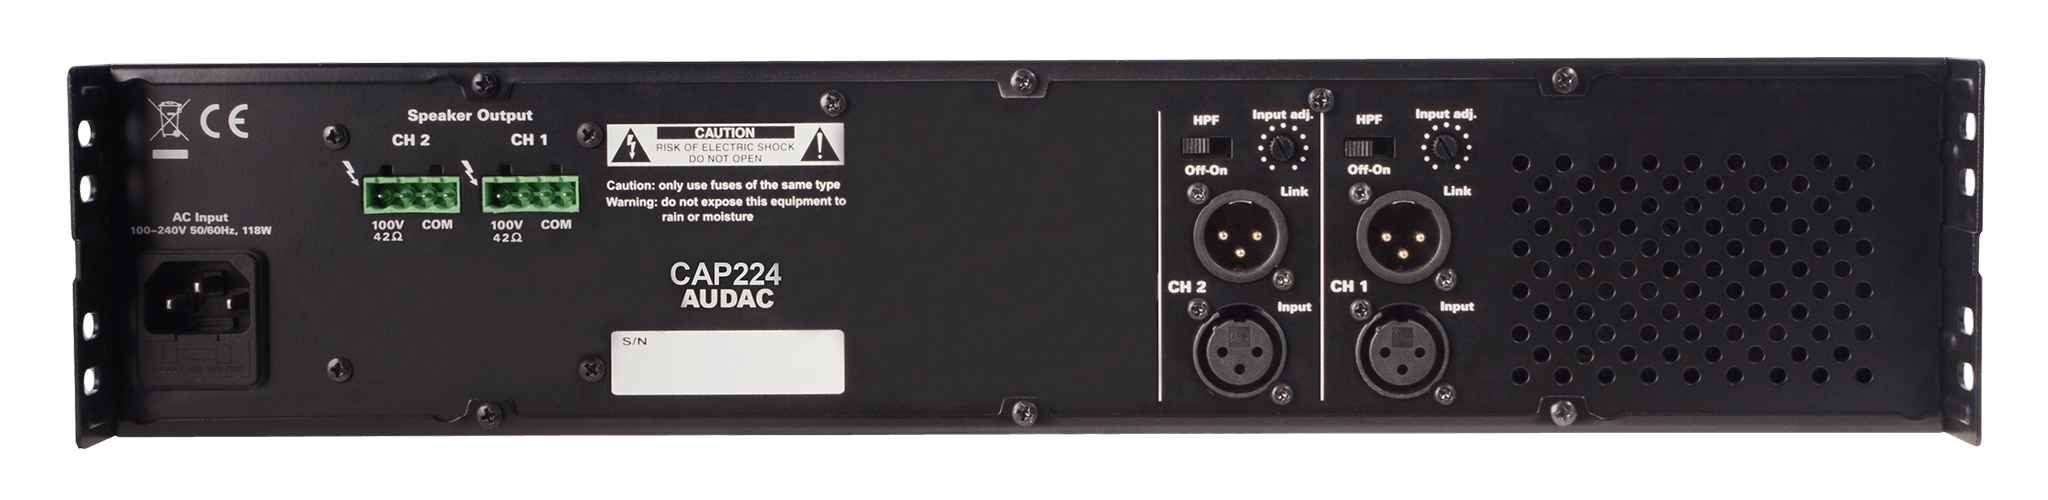 AUDAC CAP224 - 2 x 240W Dual Class-D Power Amplifier, 100V or 4Ω